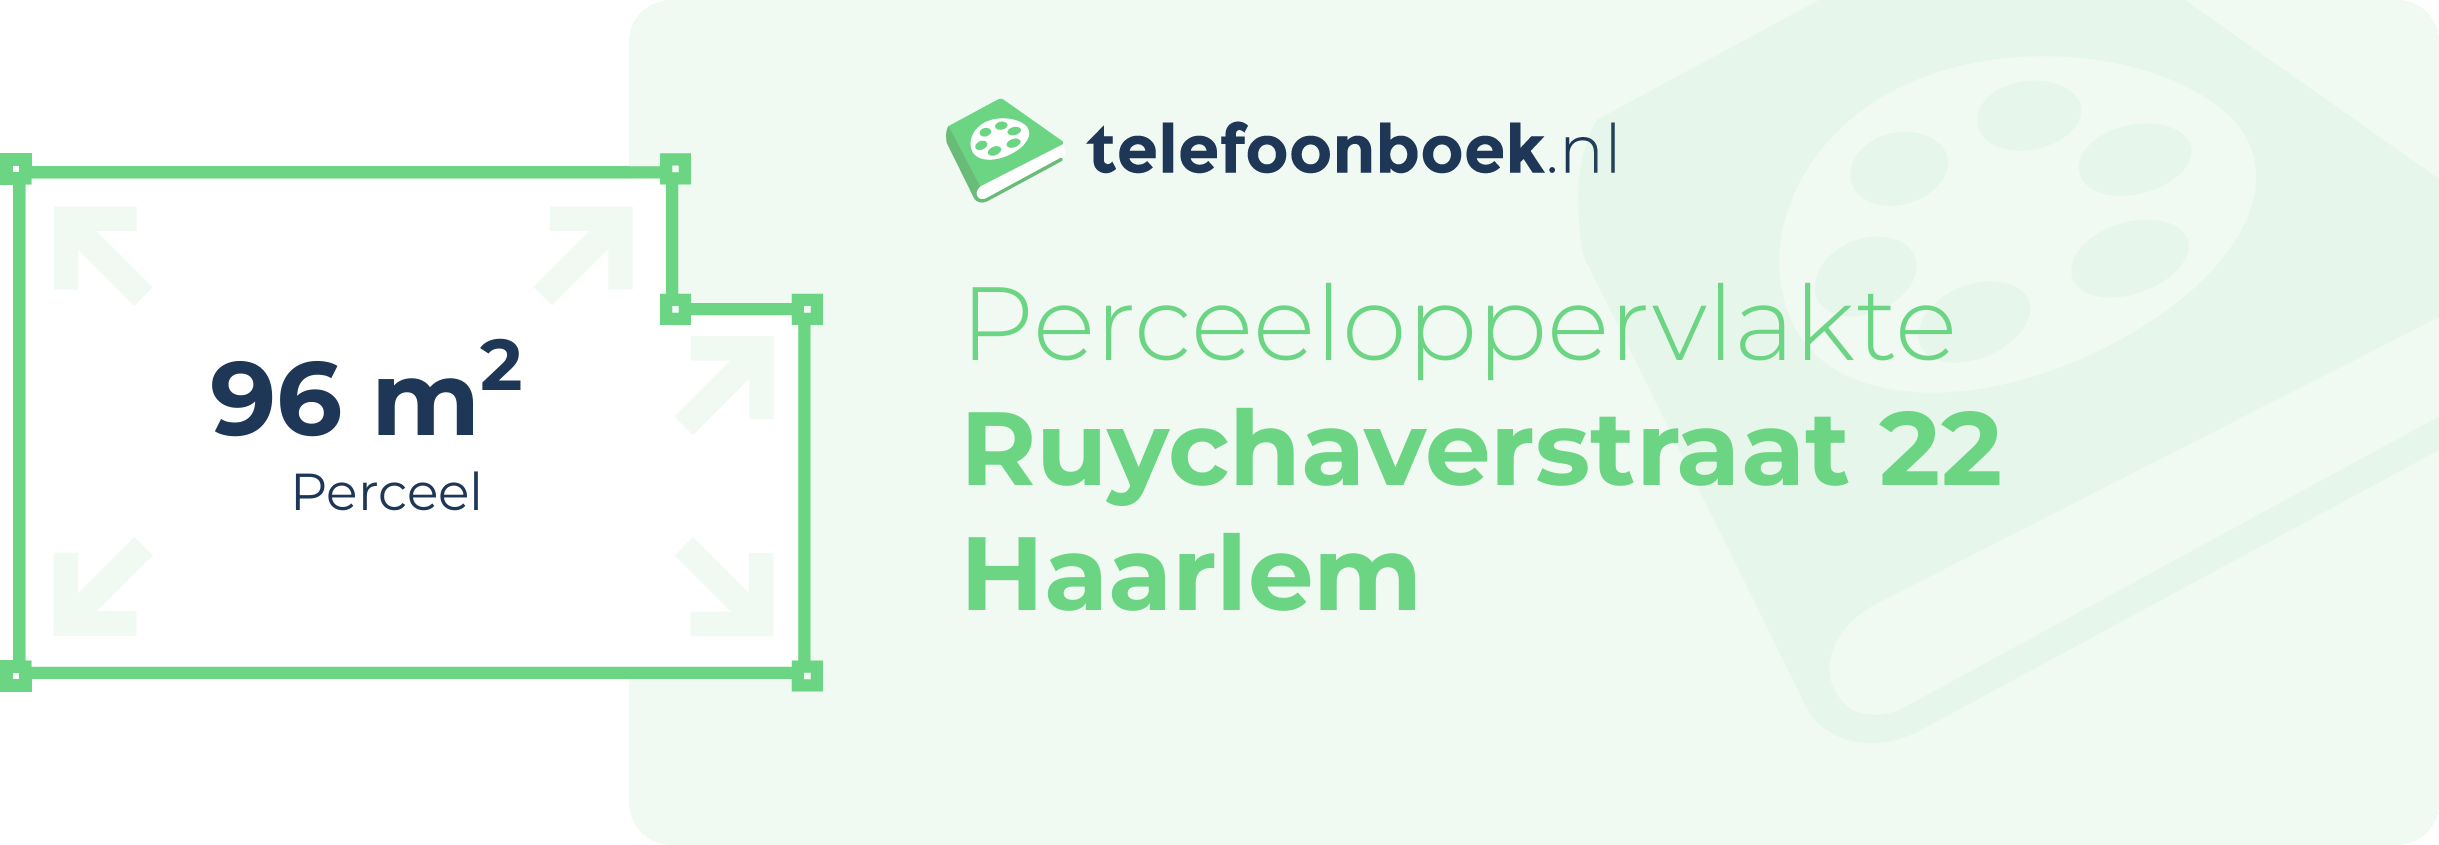 Perceeloppervlakte Ruychaverstraat 22 Haarlem